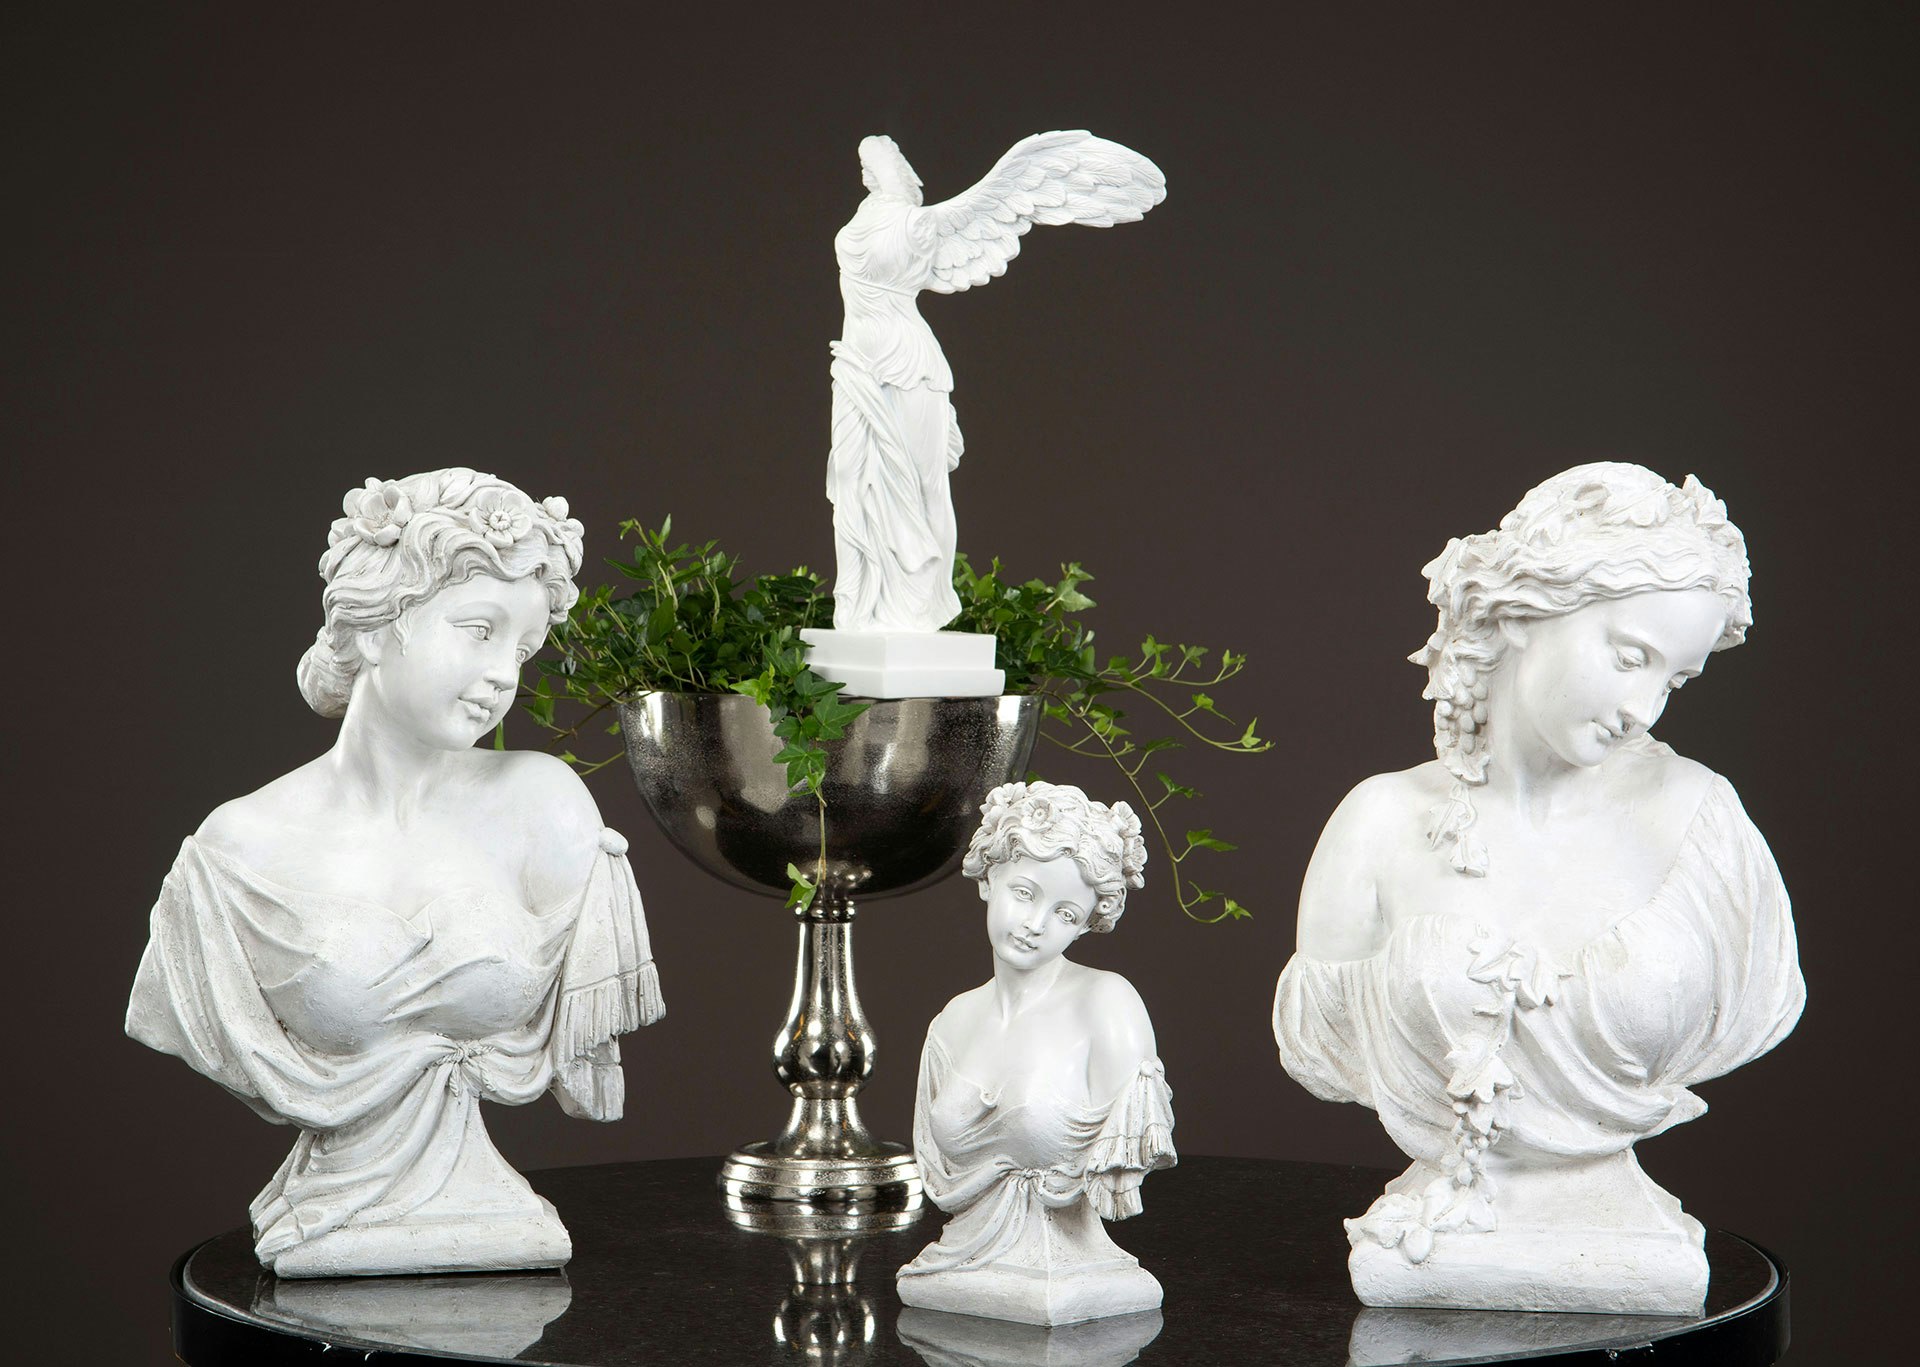 Byst Juliett, Skulptur, Heminredning, Polystone figur, Ängel skulptur,